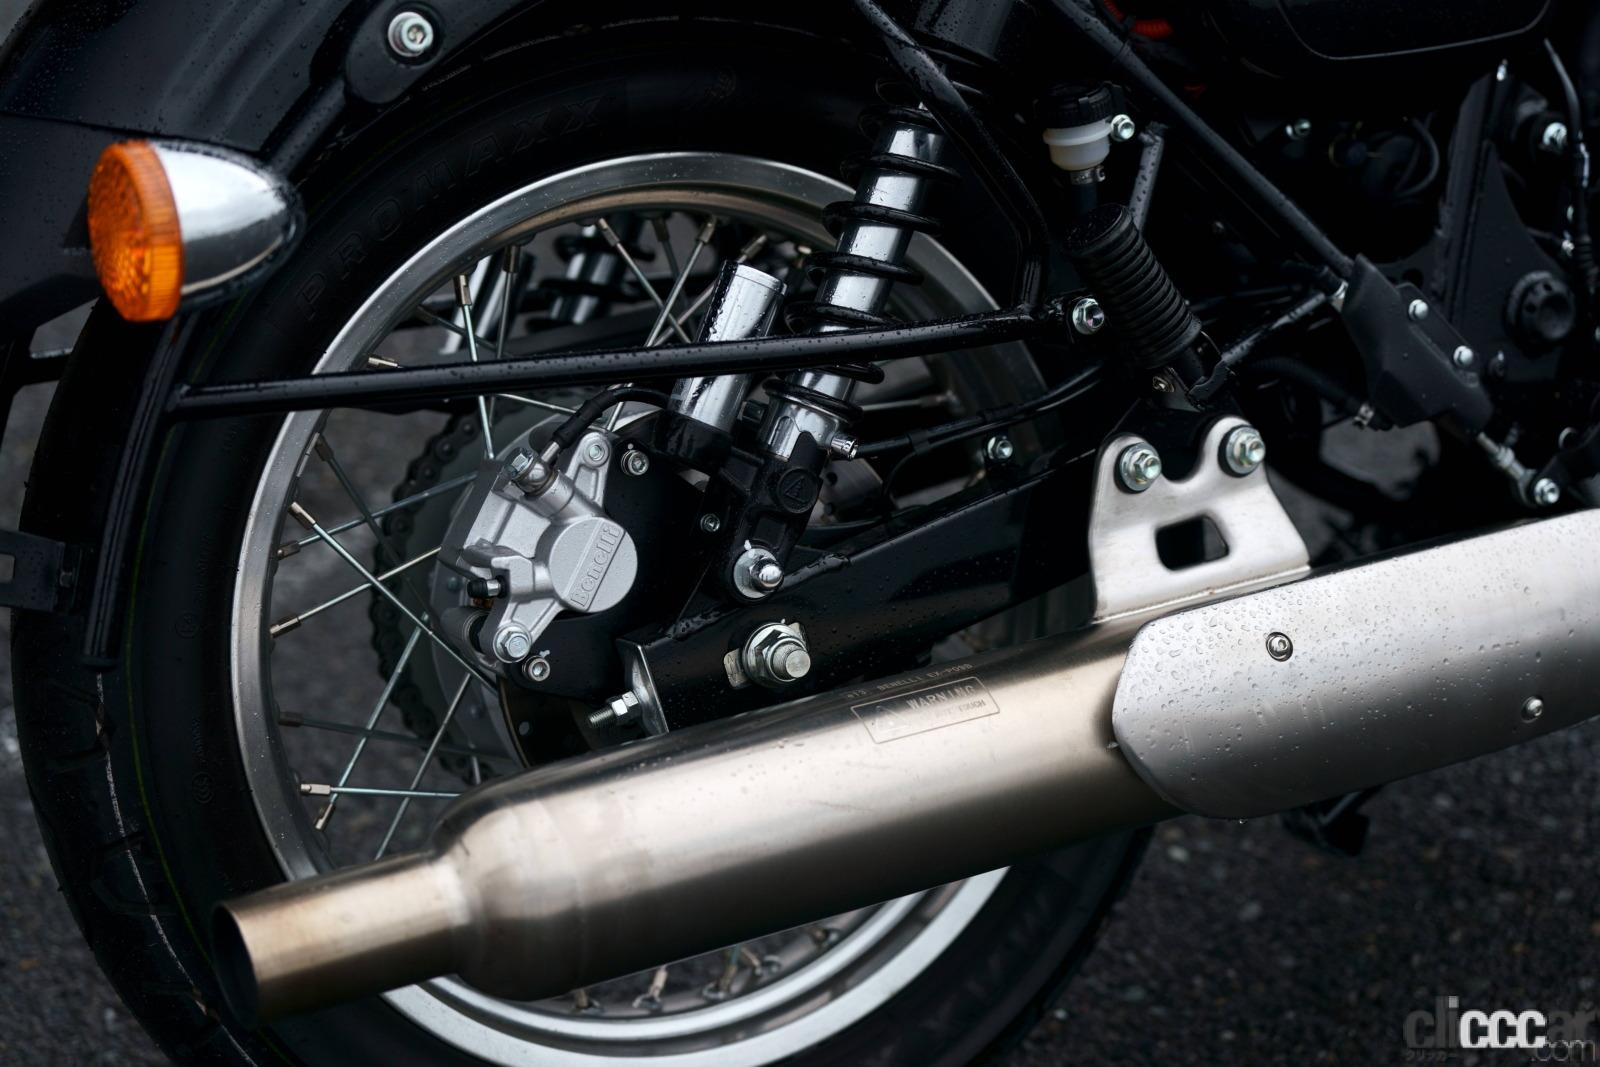 「ベネリの新型「インペリアーレ400」に試乗。のんびりバイク旅が楽しいネオレトロモデル」の25枚目の画像